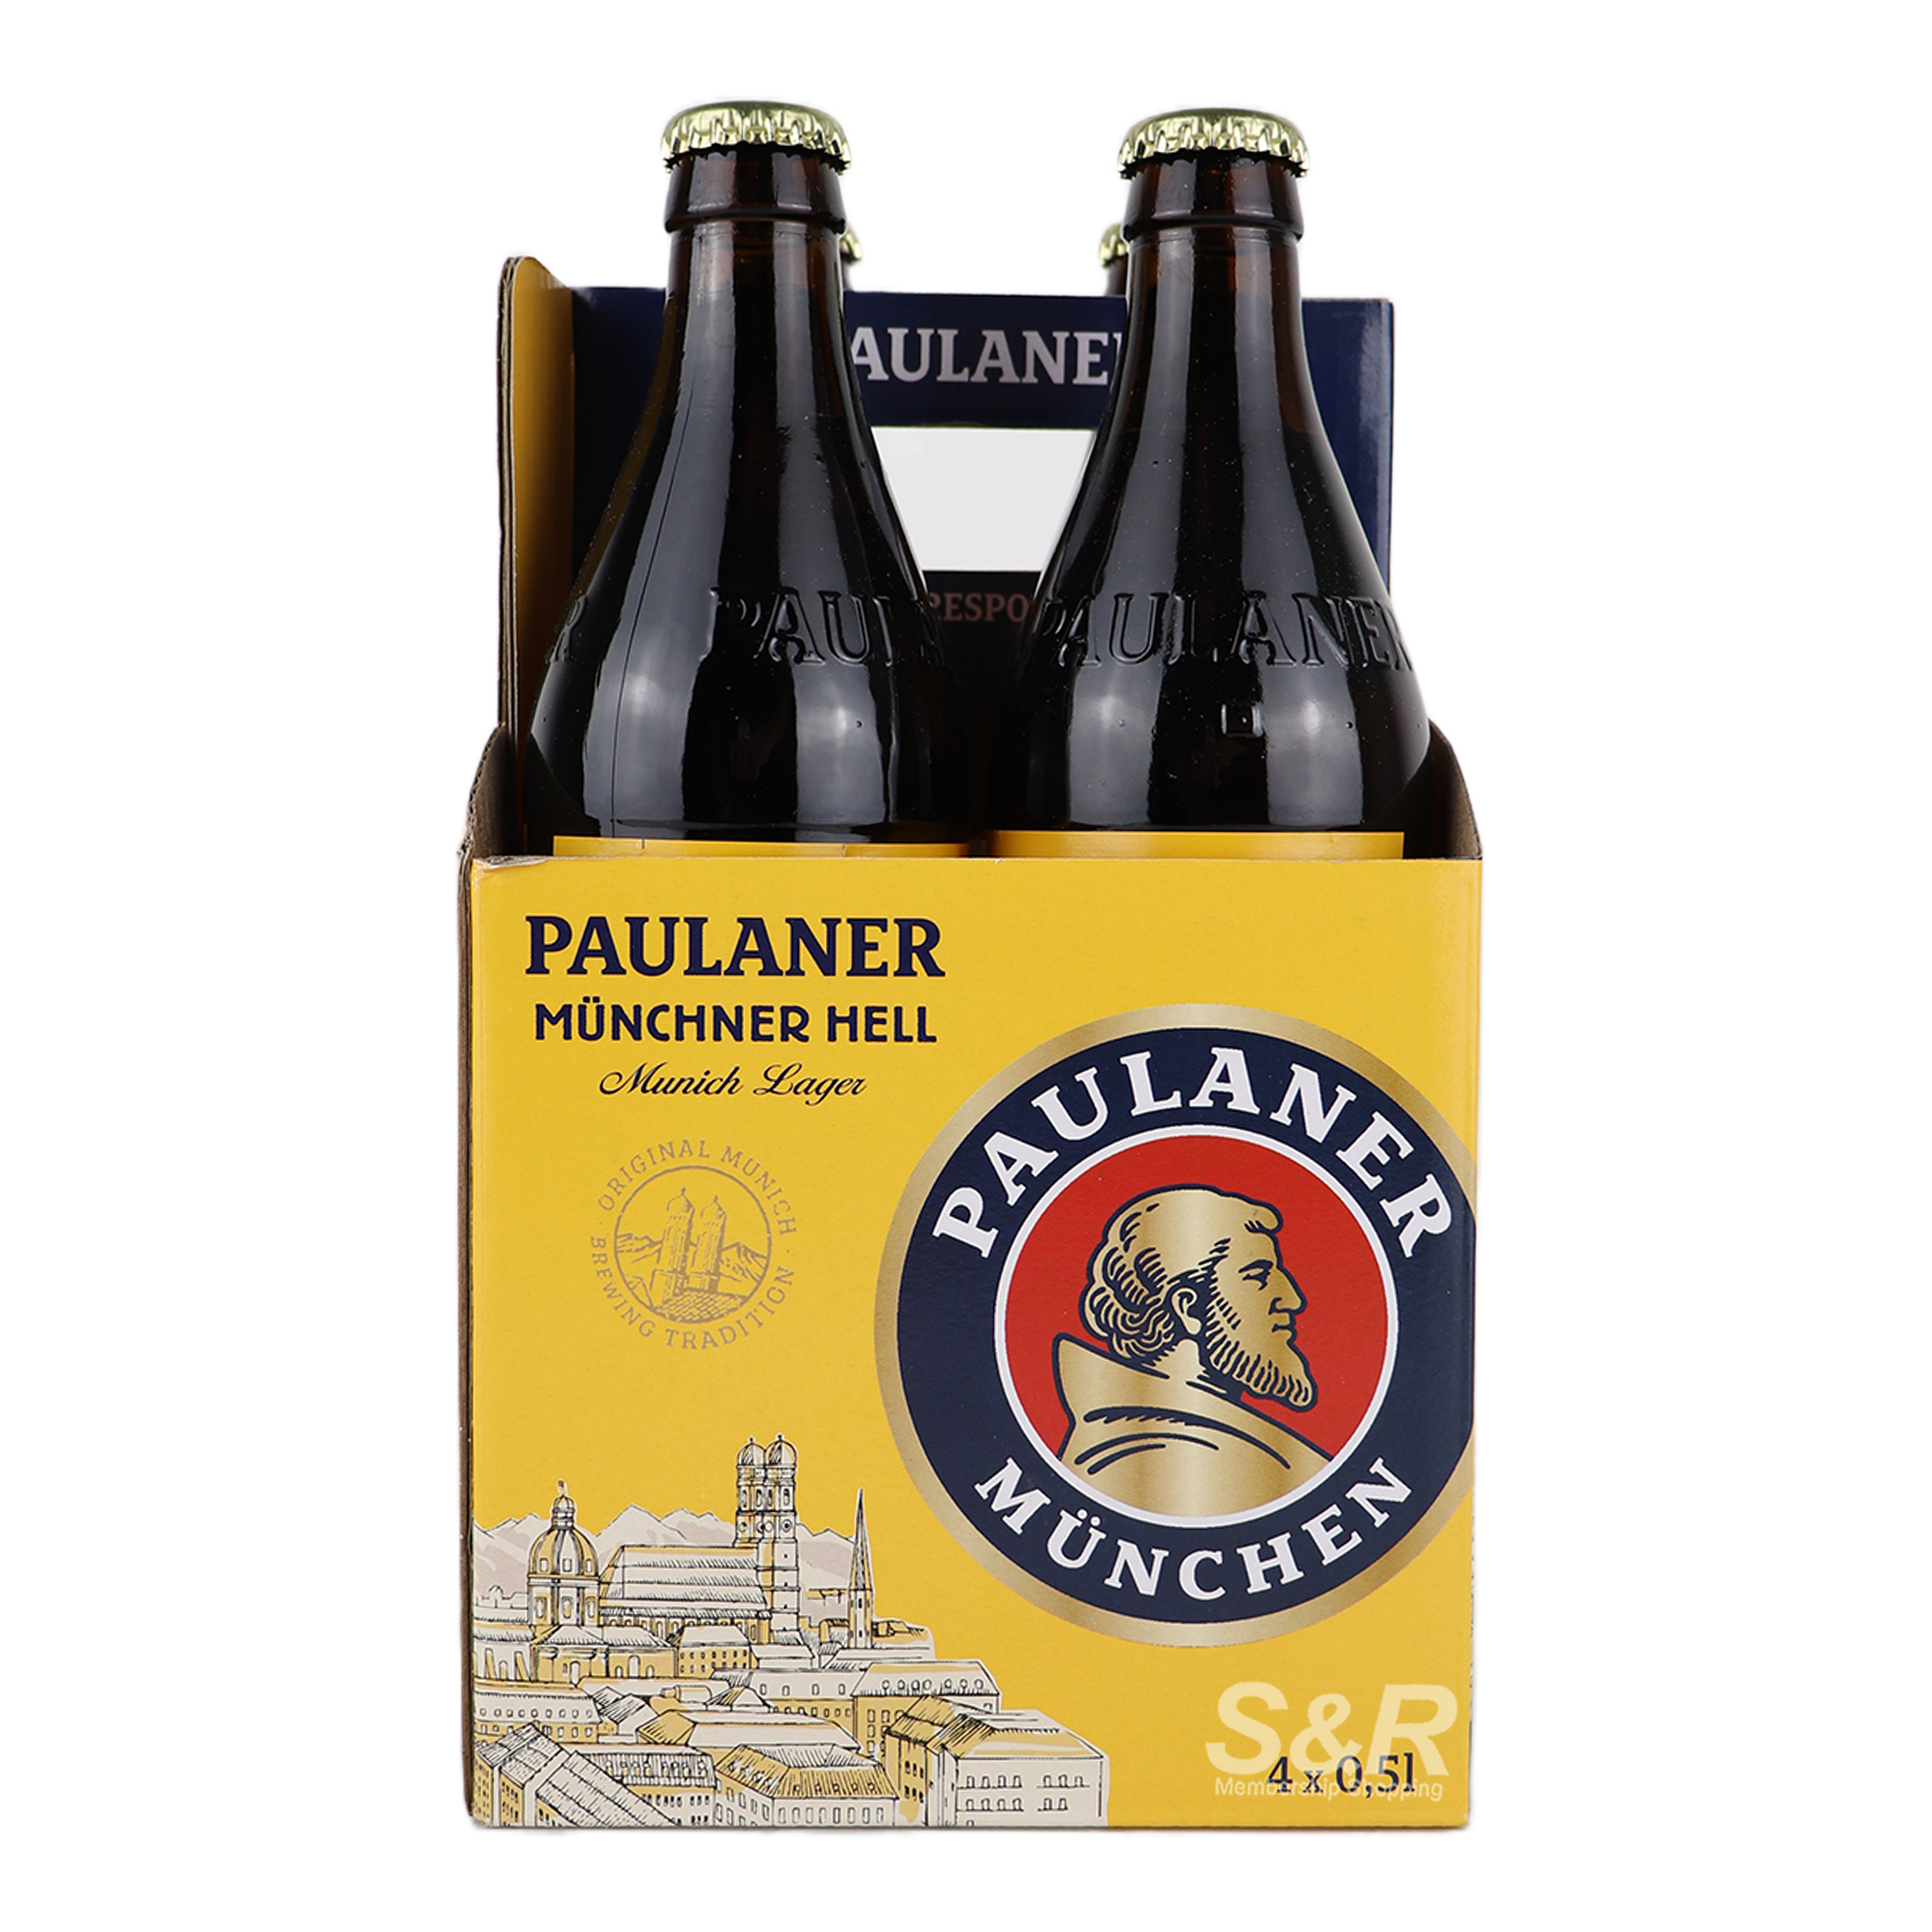 Paulaner Munchner Hell 4 Beer Bottles